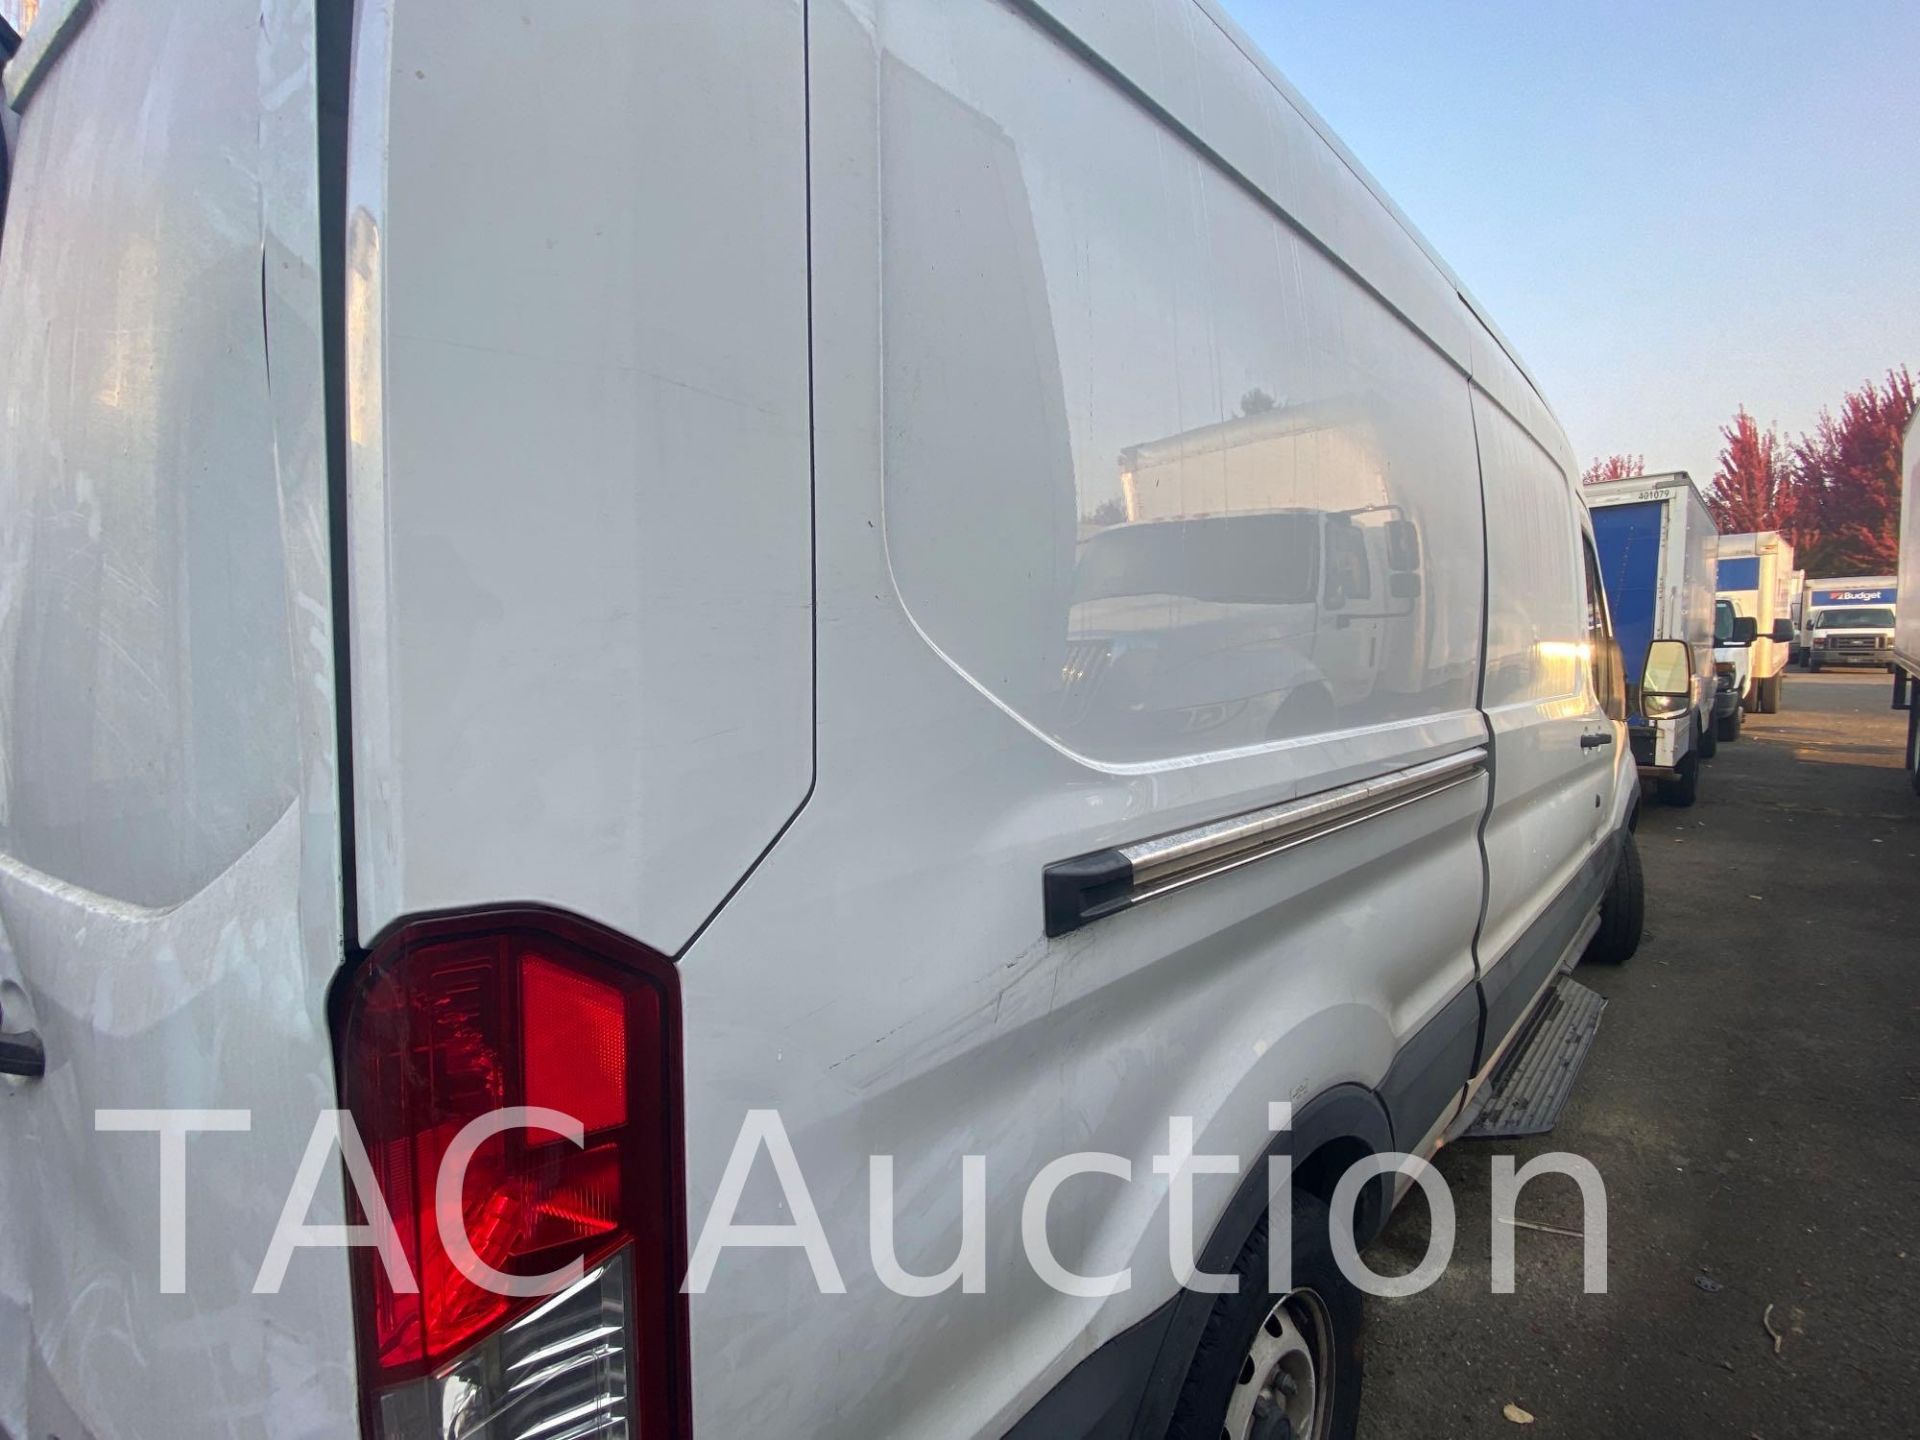 2019 Ford Transit 150 Cargo Van - Image 42 of 66